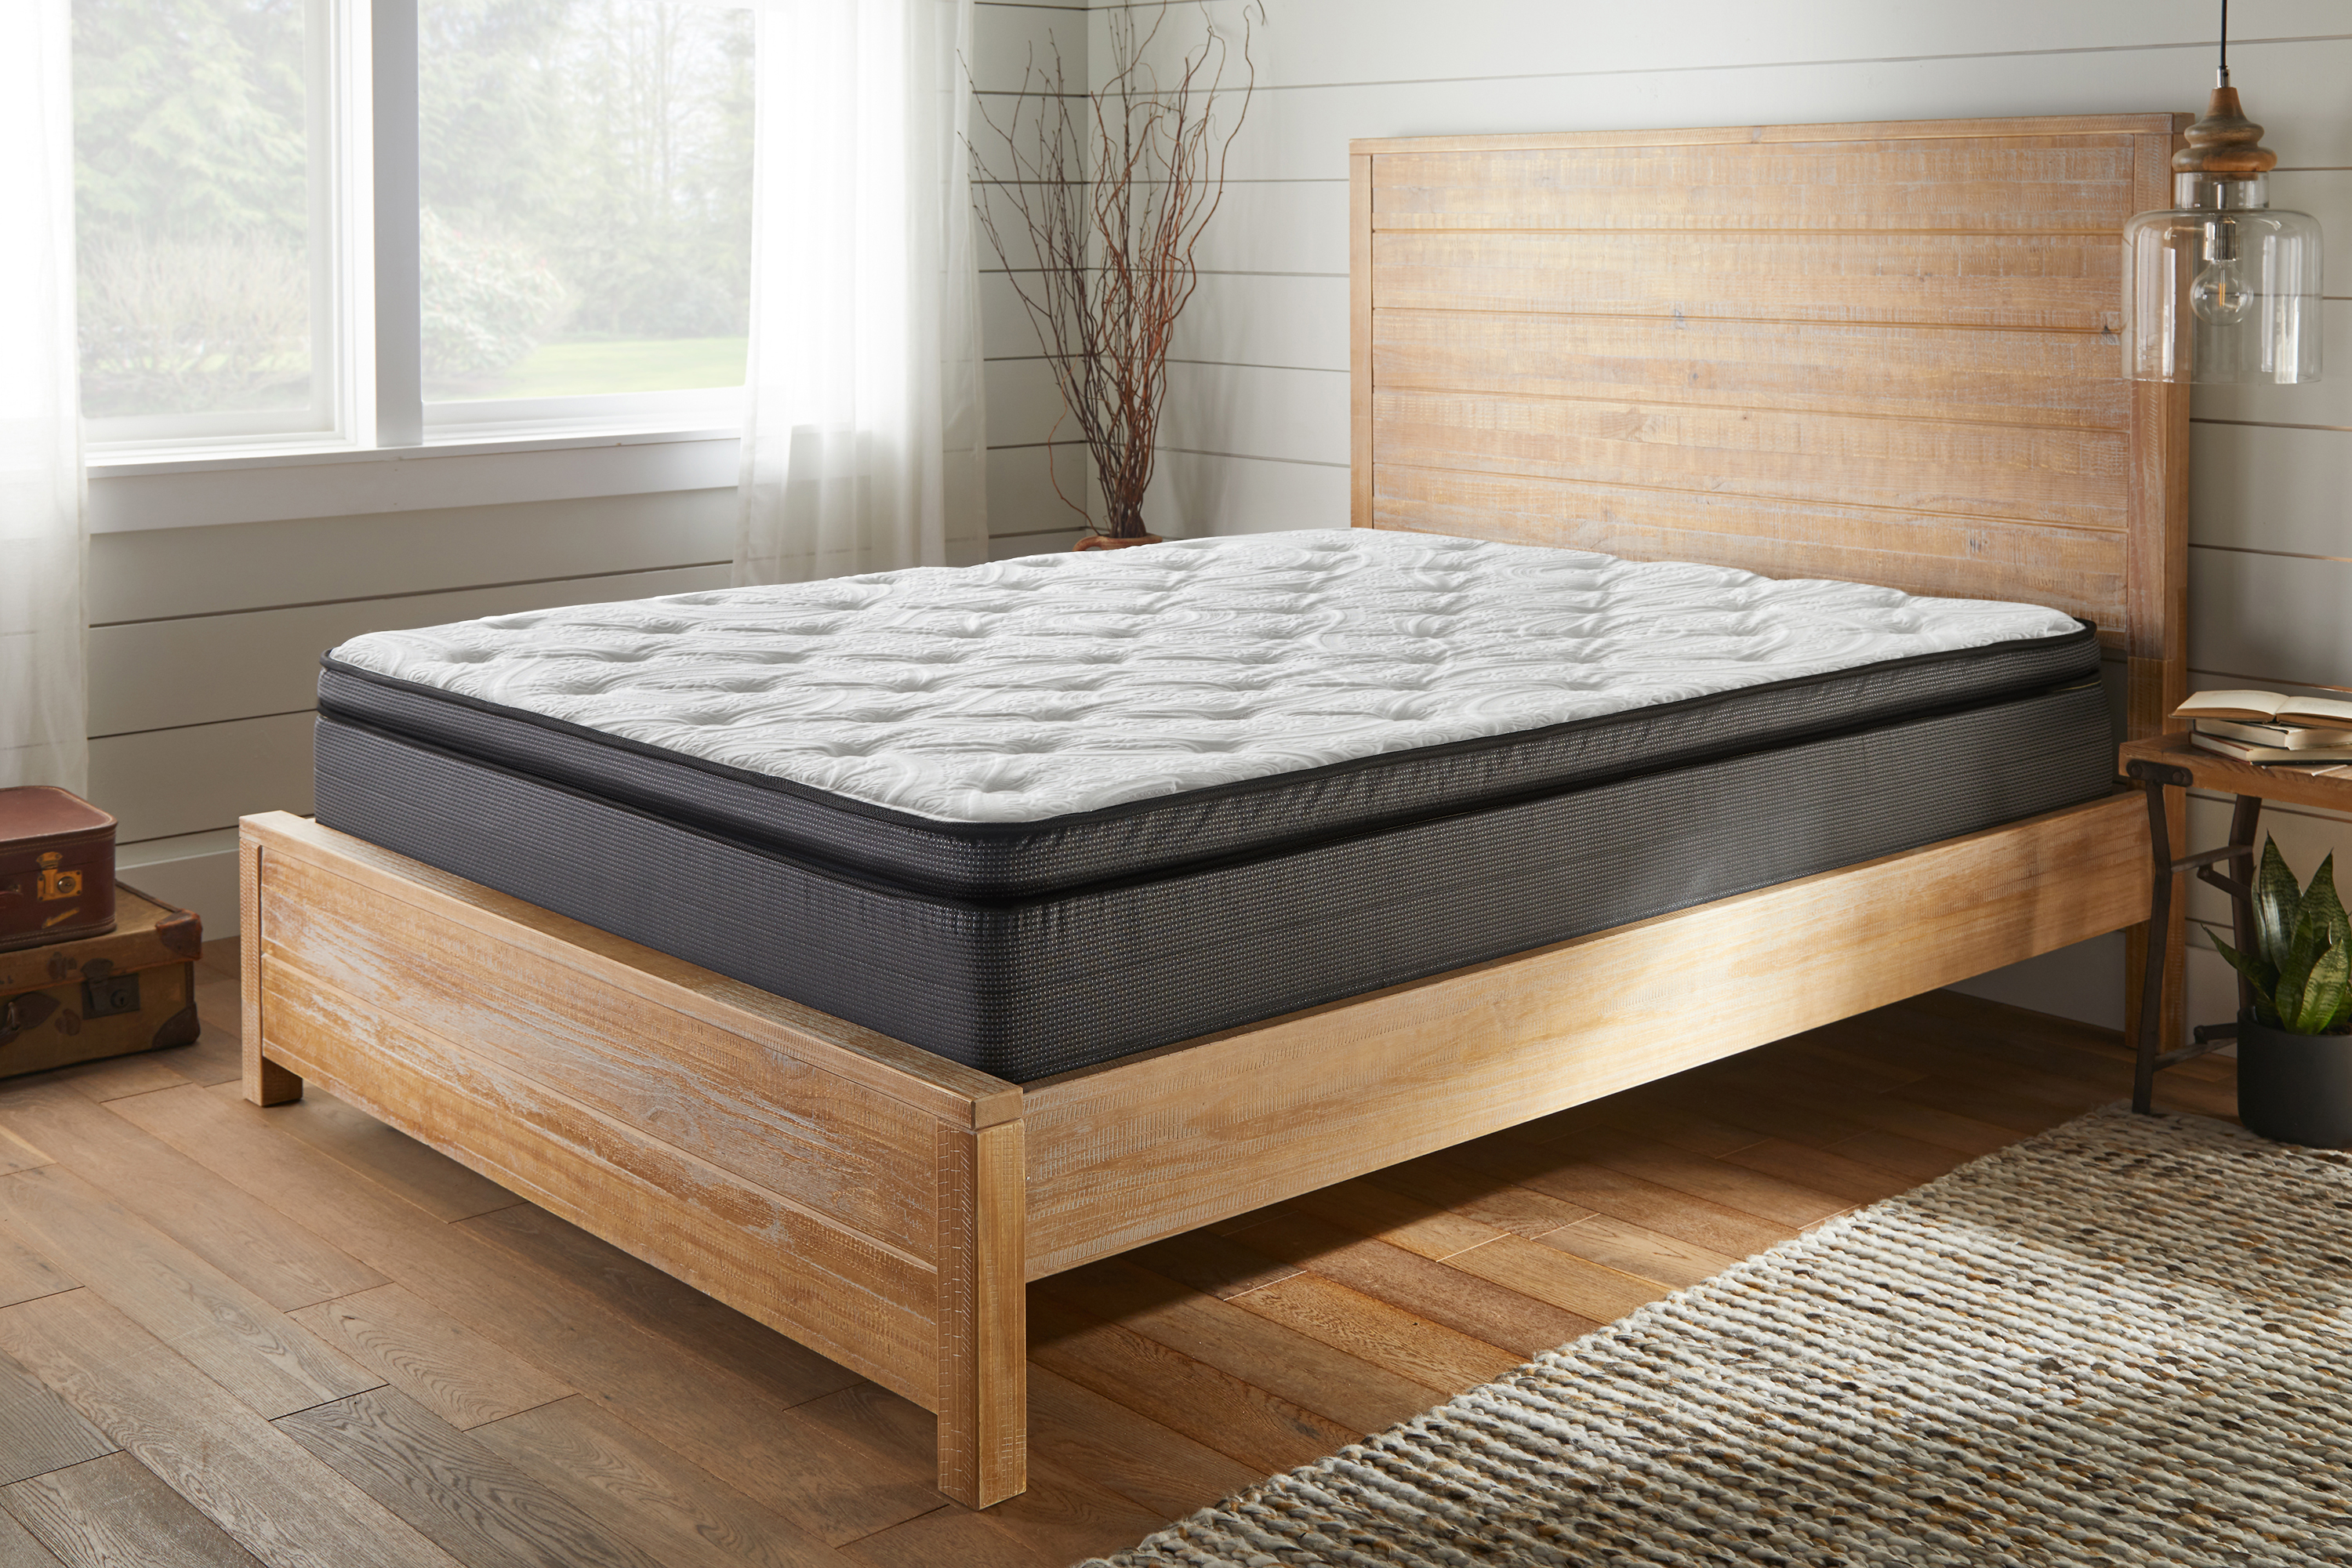 american bedding mattress and fiberglass